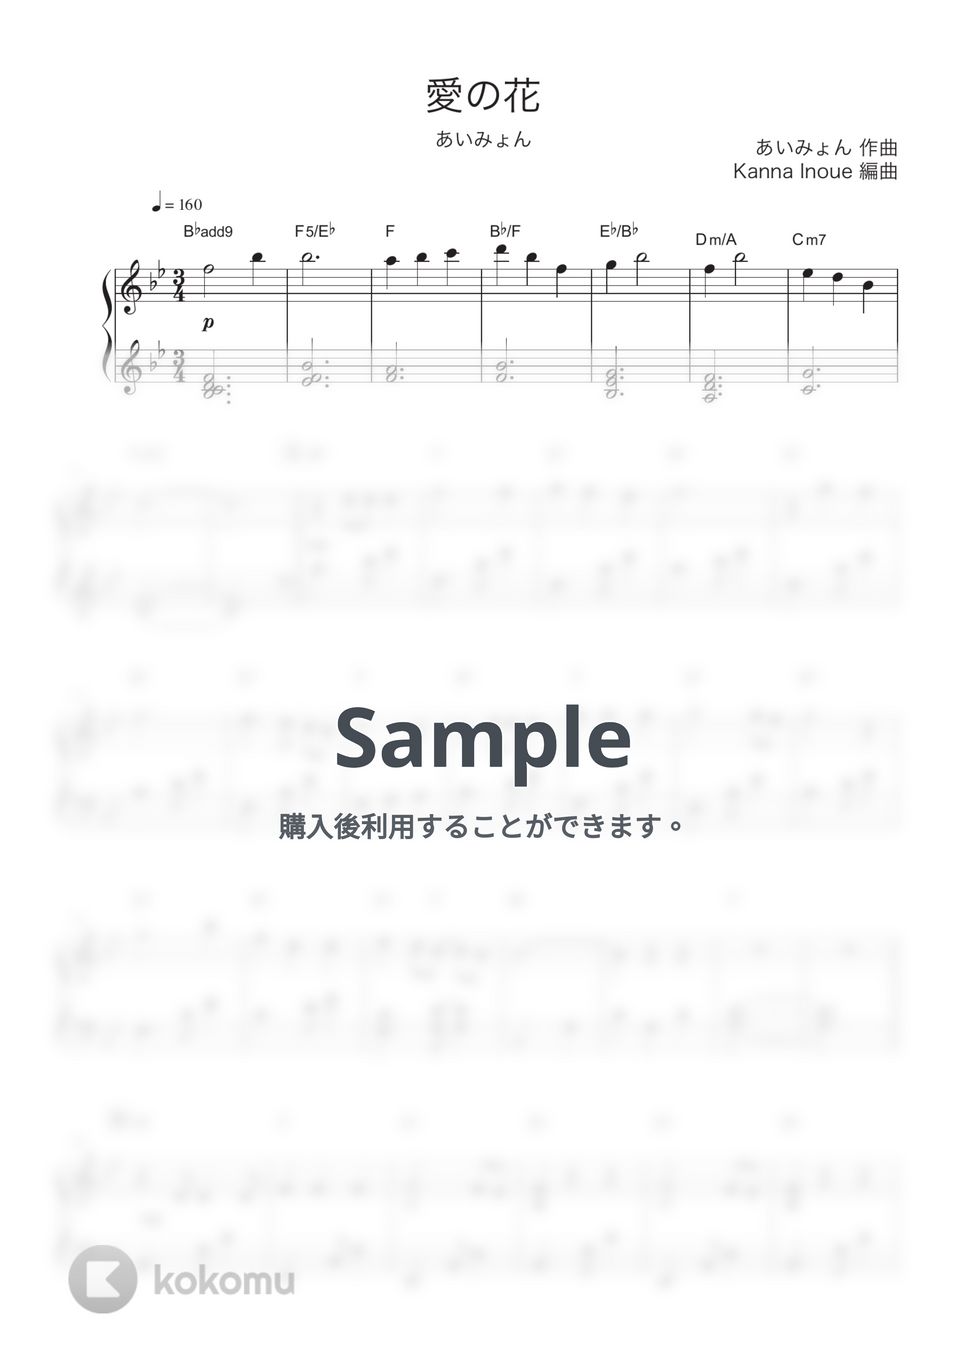 あいみょん - 愛の花 (ピアノソロ / 初級 / らんまん) by Kanna Inoue